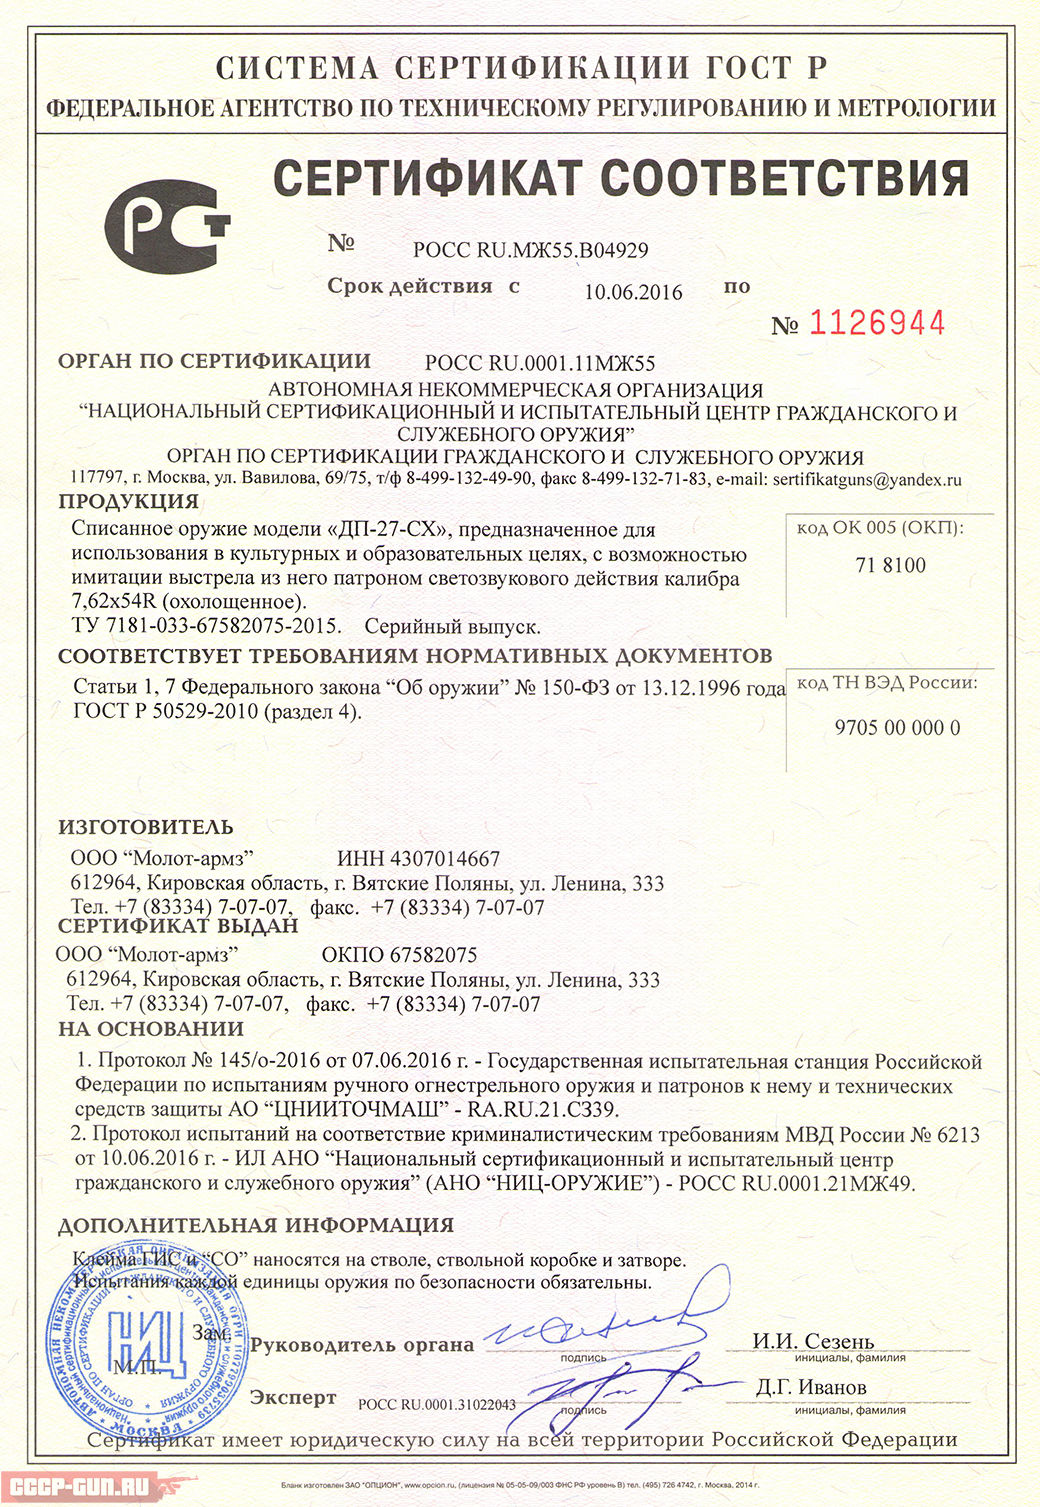 Сертификат на охолощенный Дегтярева СХП (ДП-27-СХ Молот Армз) скачать